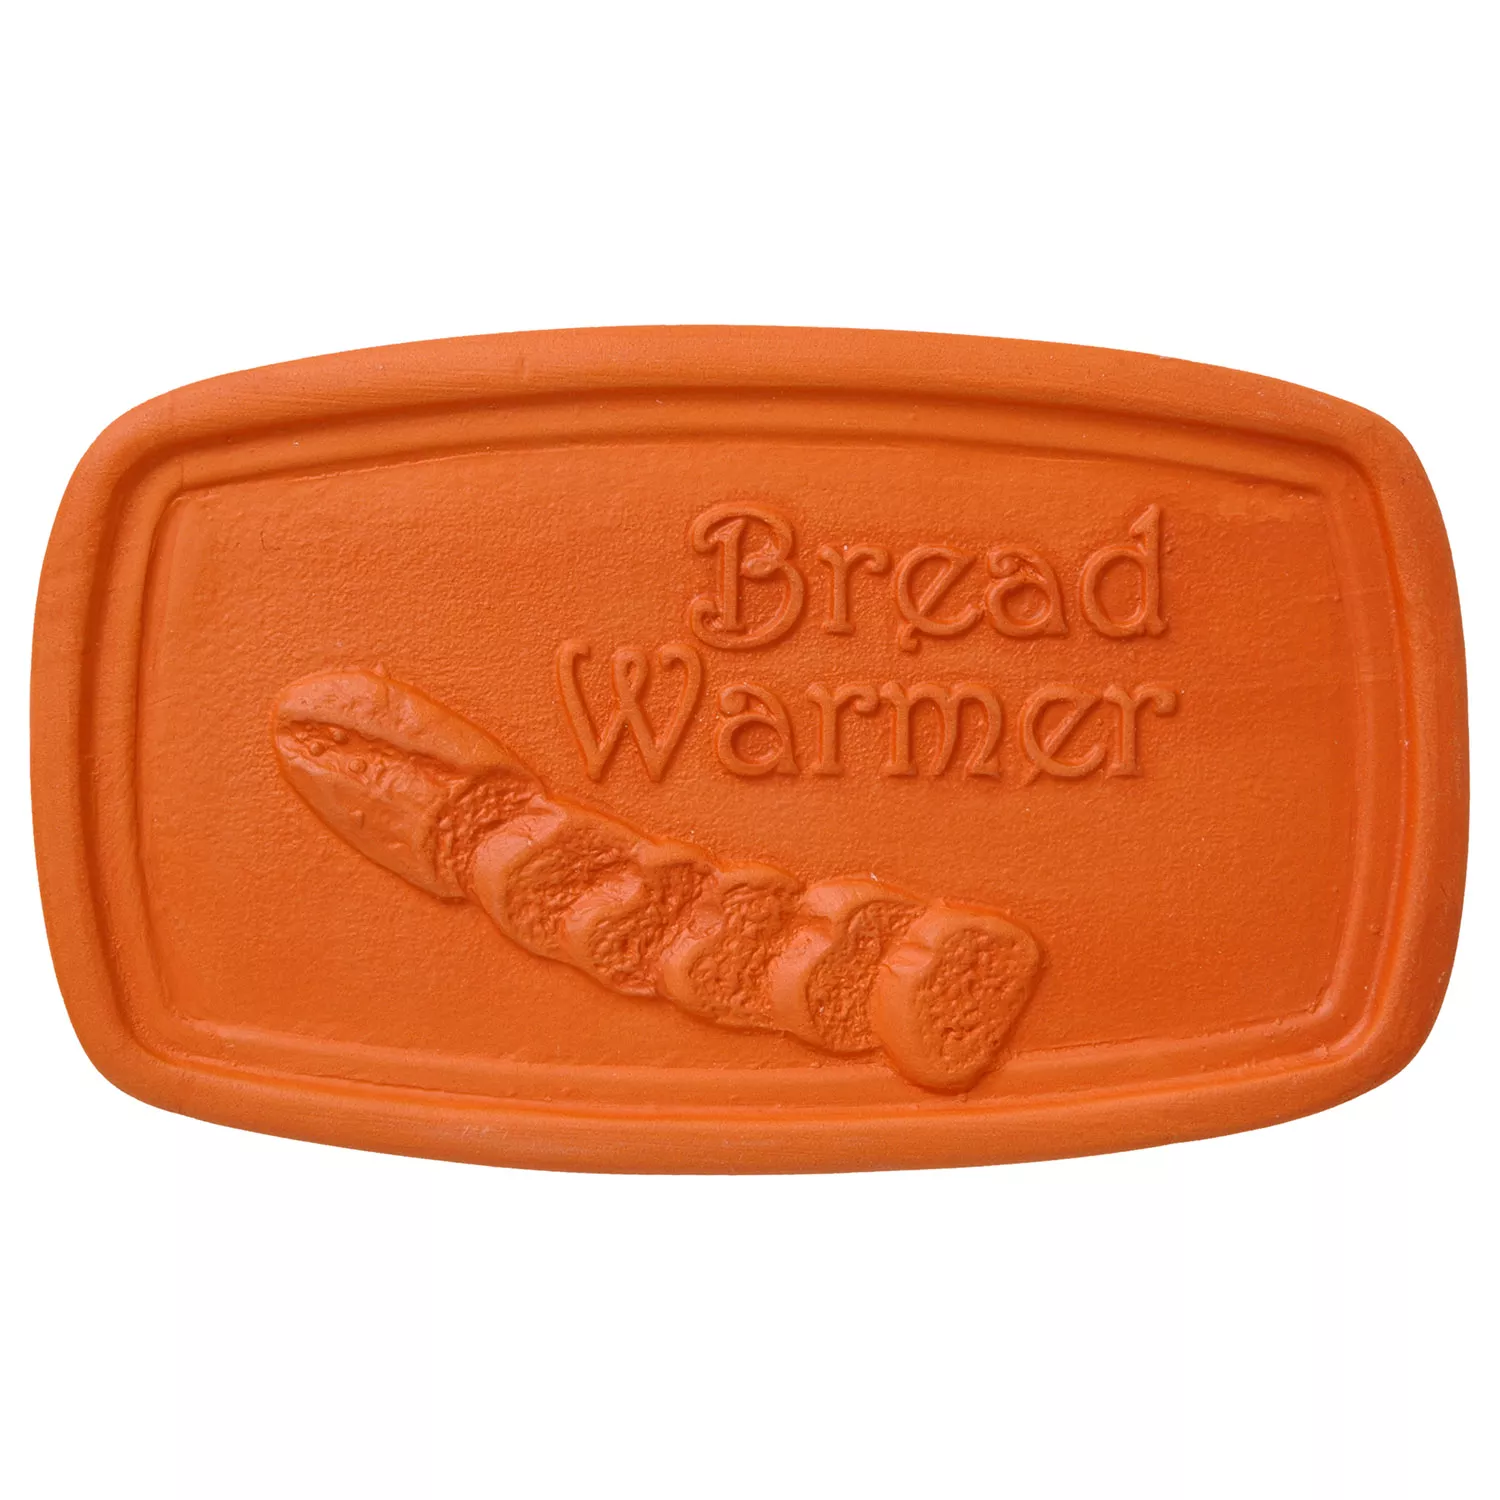 Terra Cotta Bread Warmer